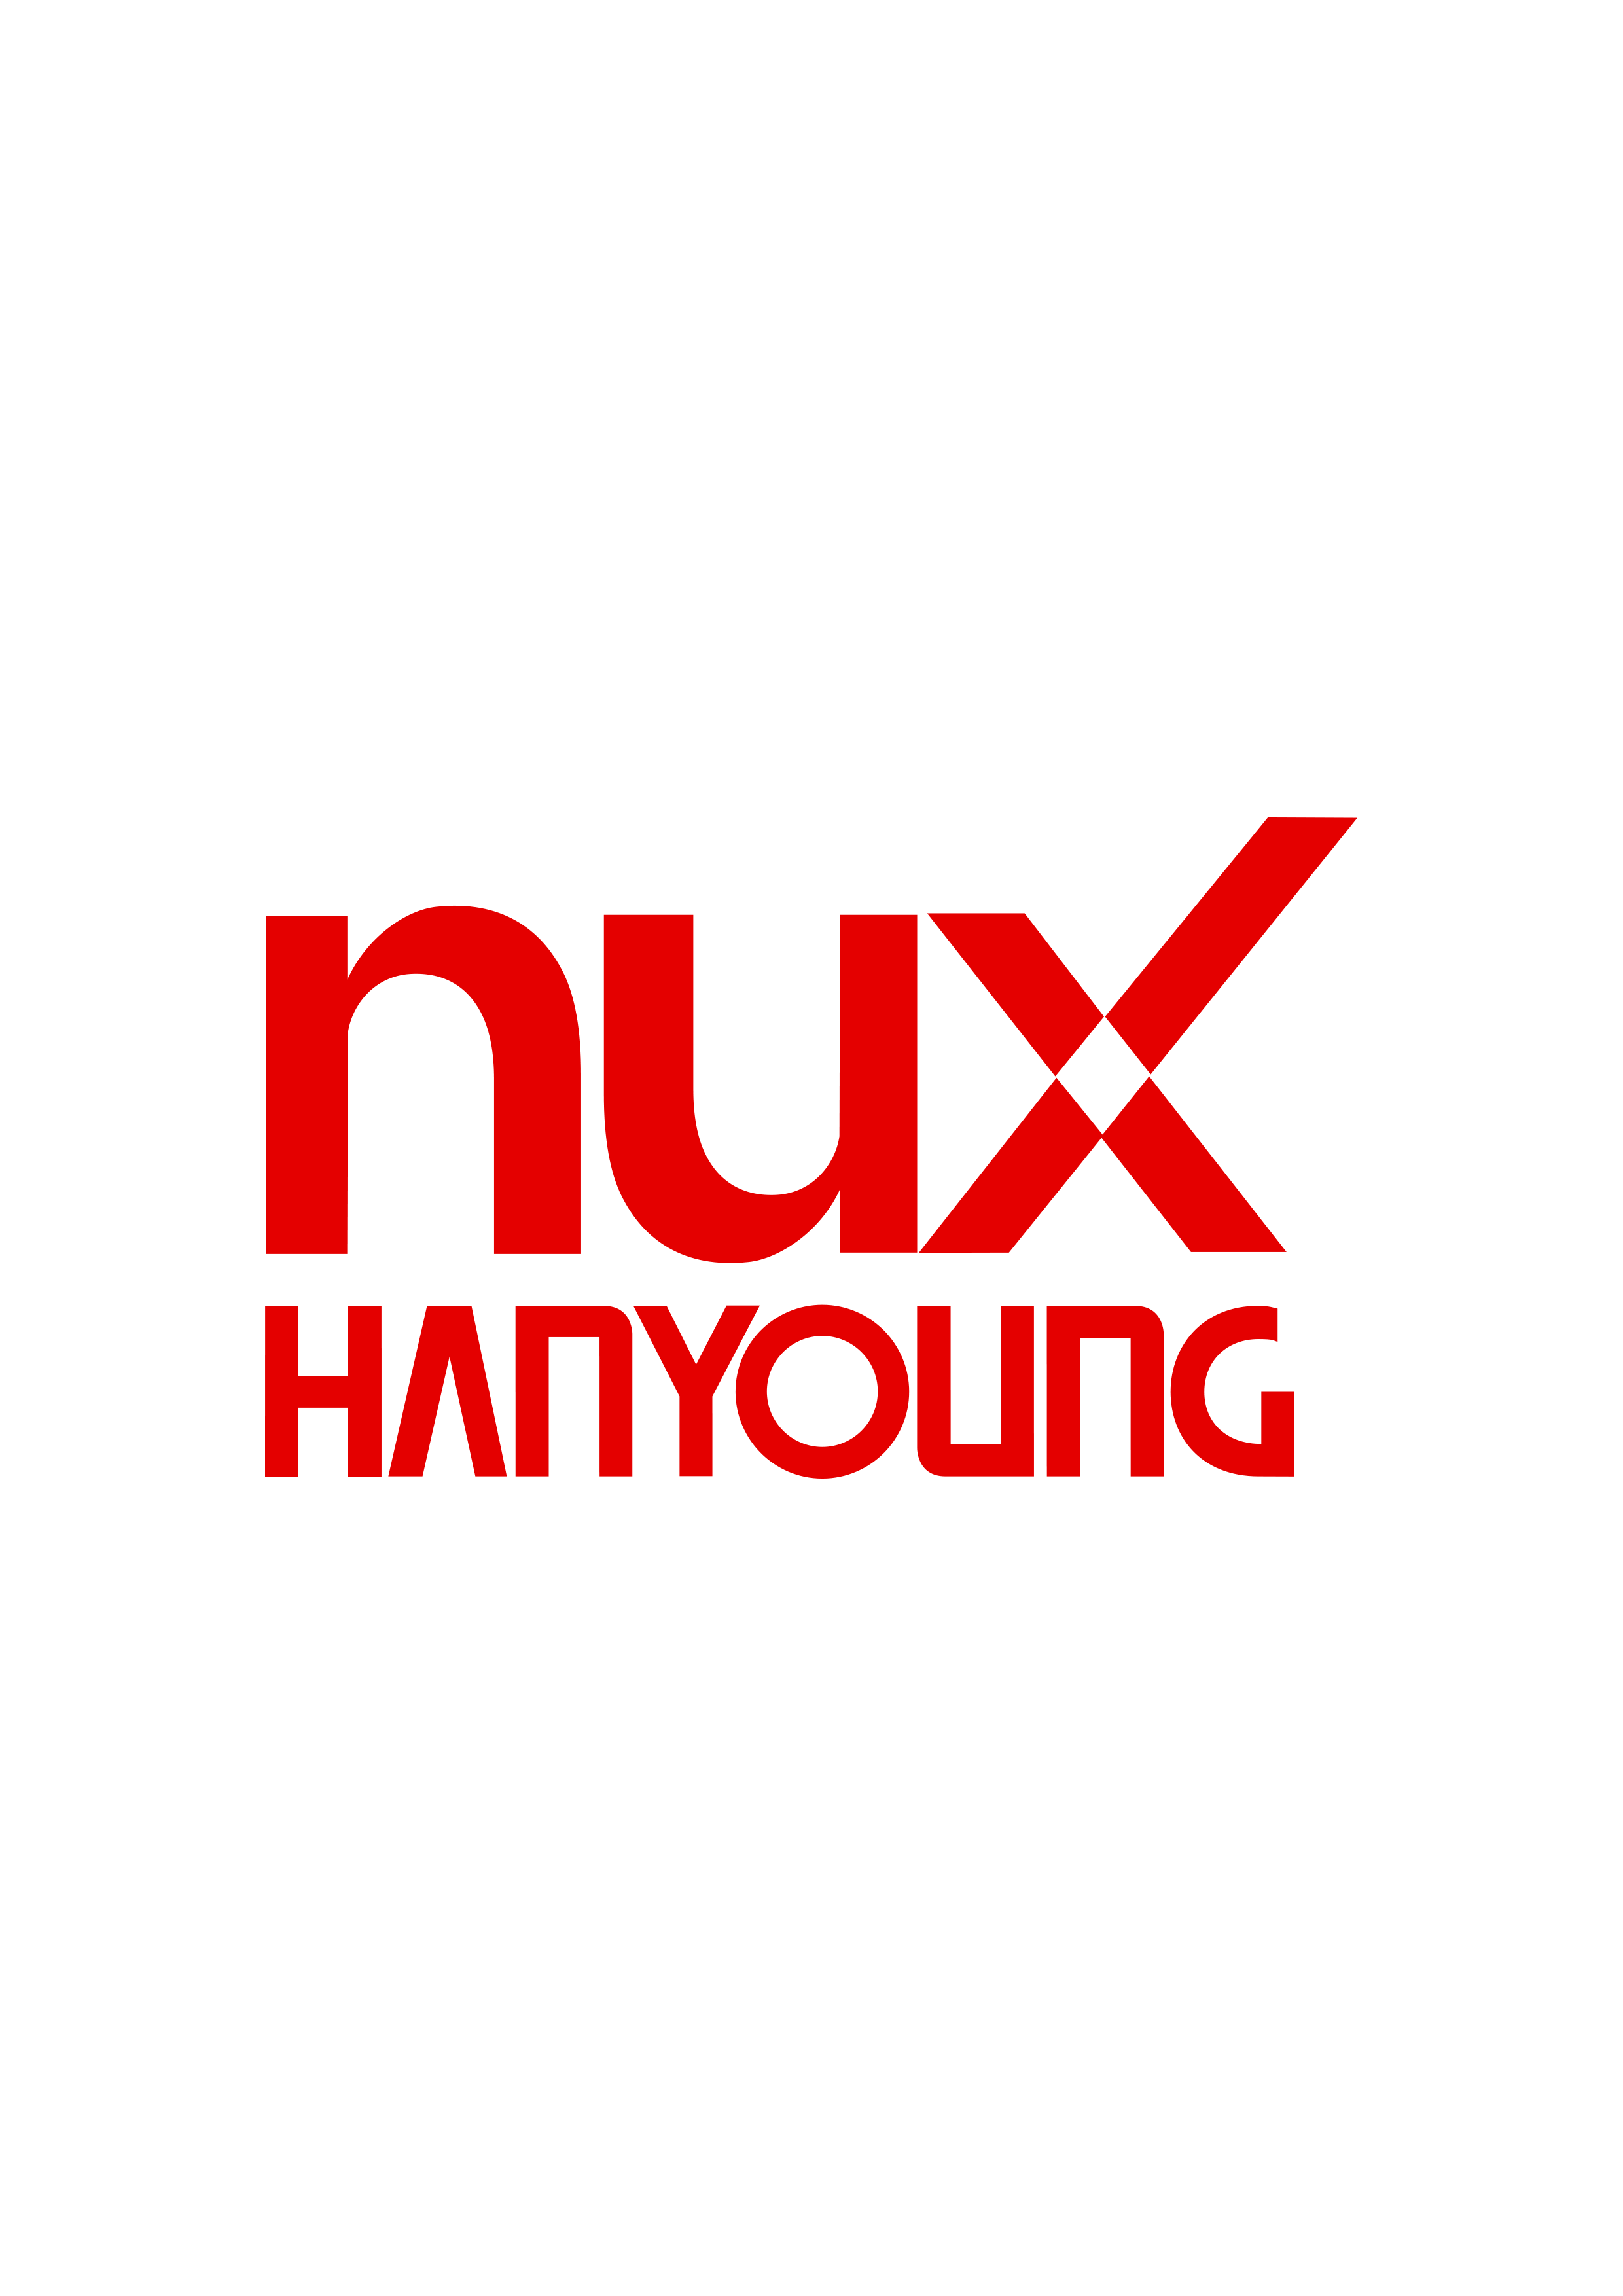 HANYOUNG NUX CO LTD